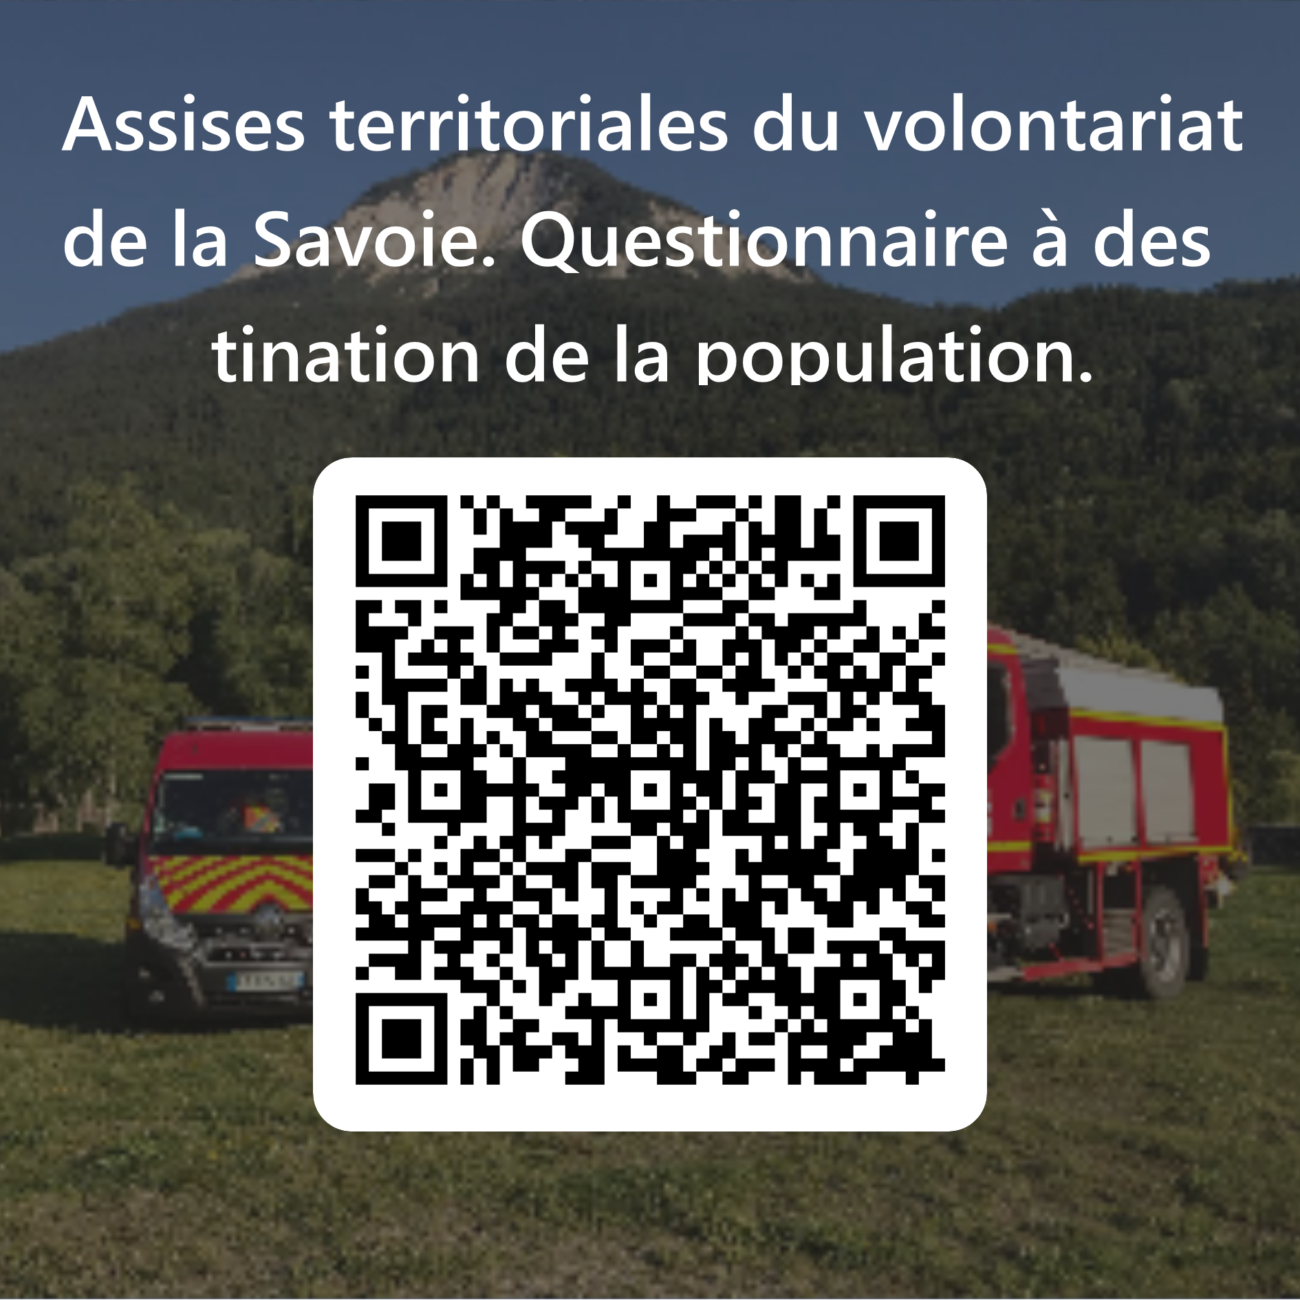 Assises territoriales du volontariat de la Savoie : questionnaire du SDIS 73 à destination de la population